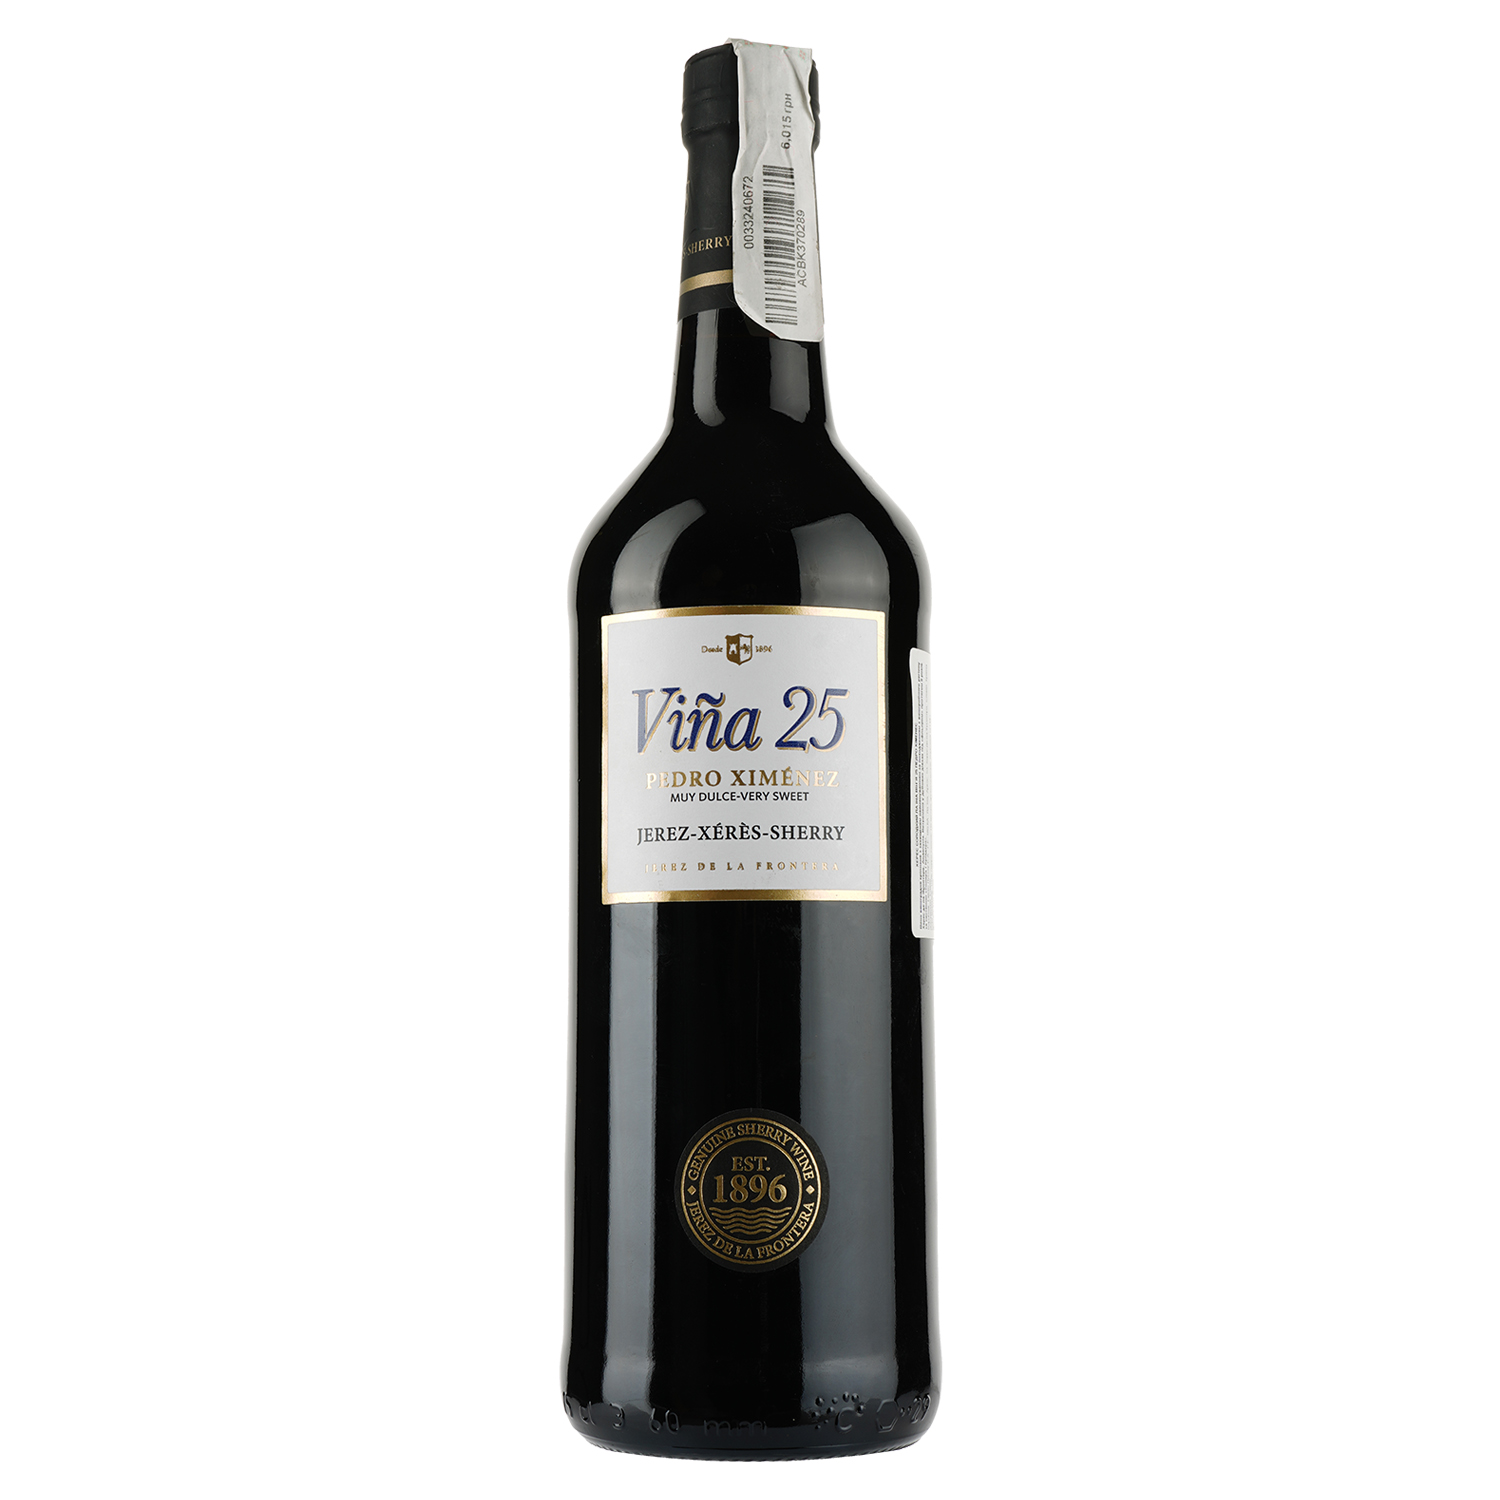 Вино La Ina херес Pedro Ximenez Sherry Vina 25, красное, сладкое, 17%, 0,75 л - фото 1